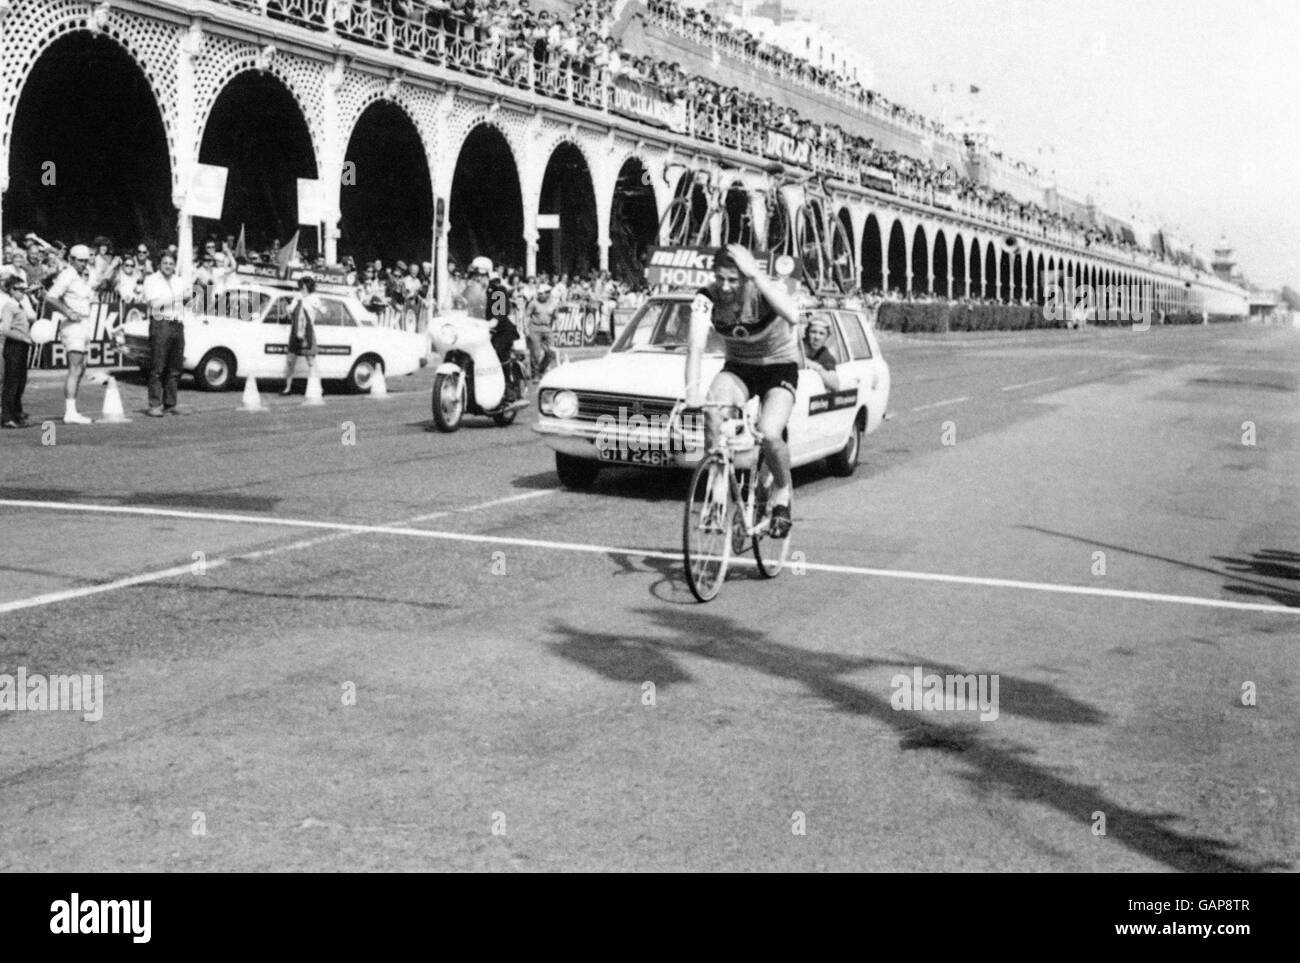 La course à vélo - Lait - Brighton - 1970 Banque D'Images